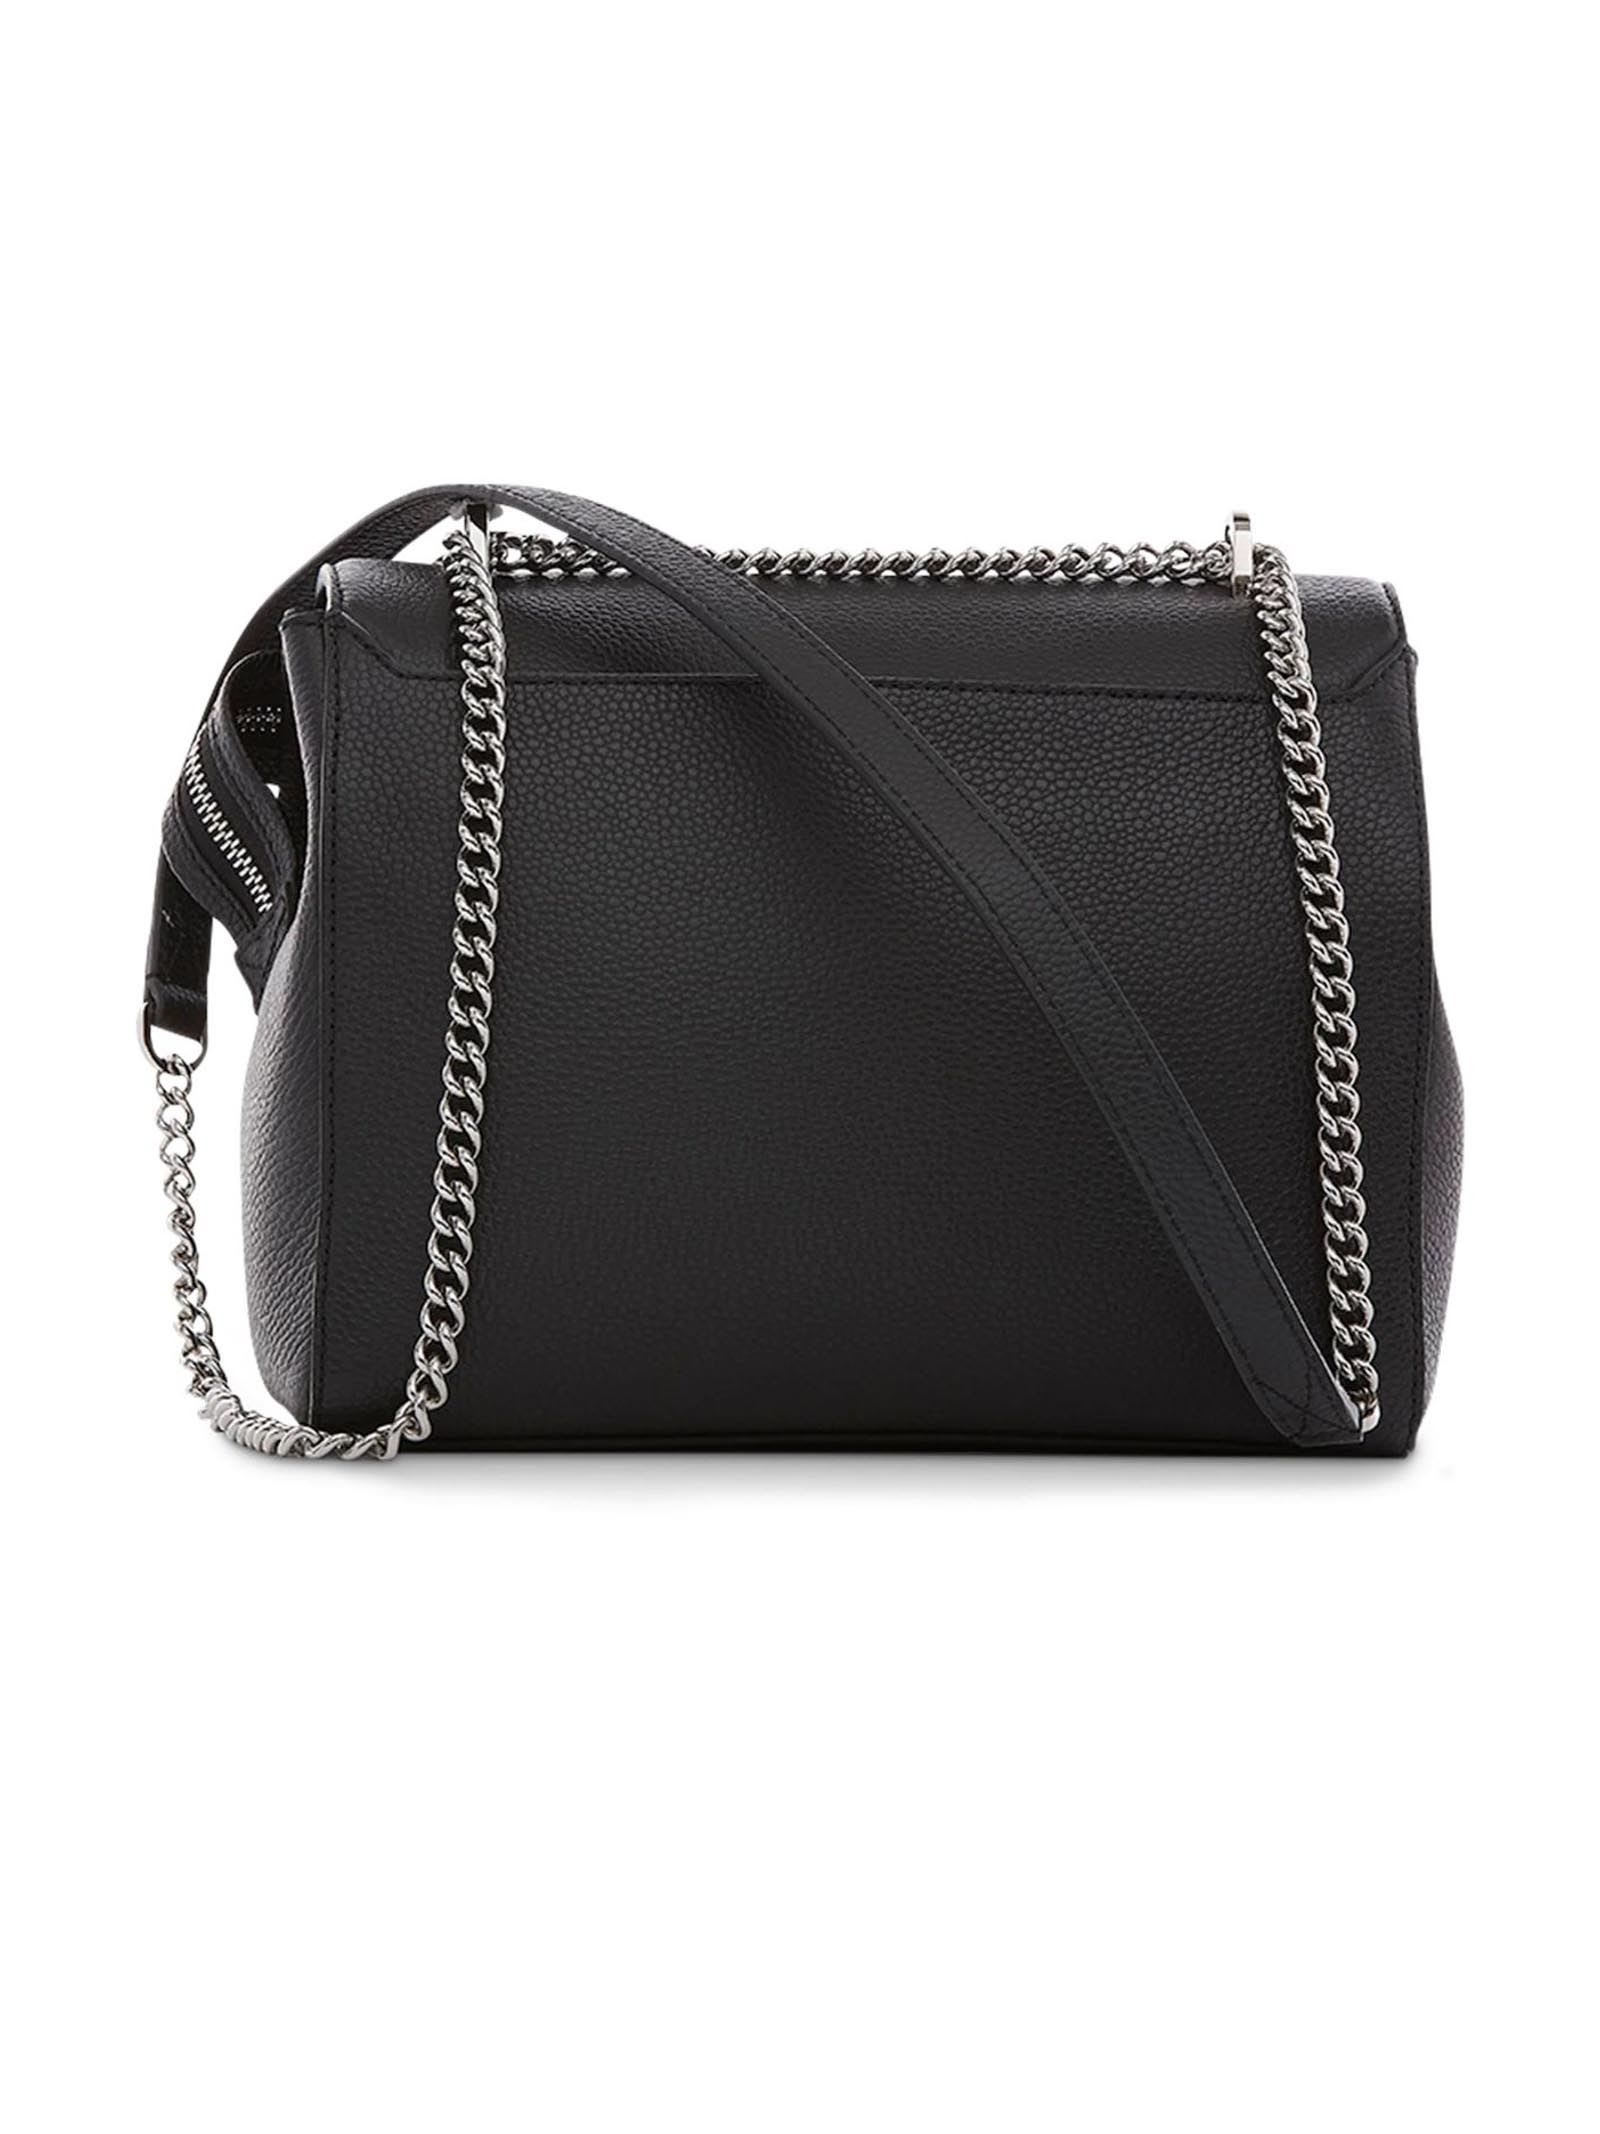 Shop Lancel Black Grained Leather Shoulder Bag